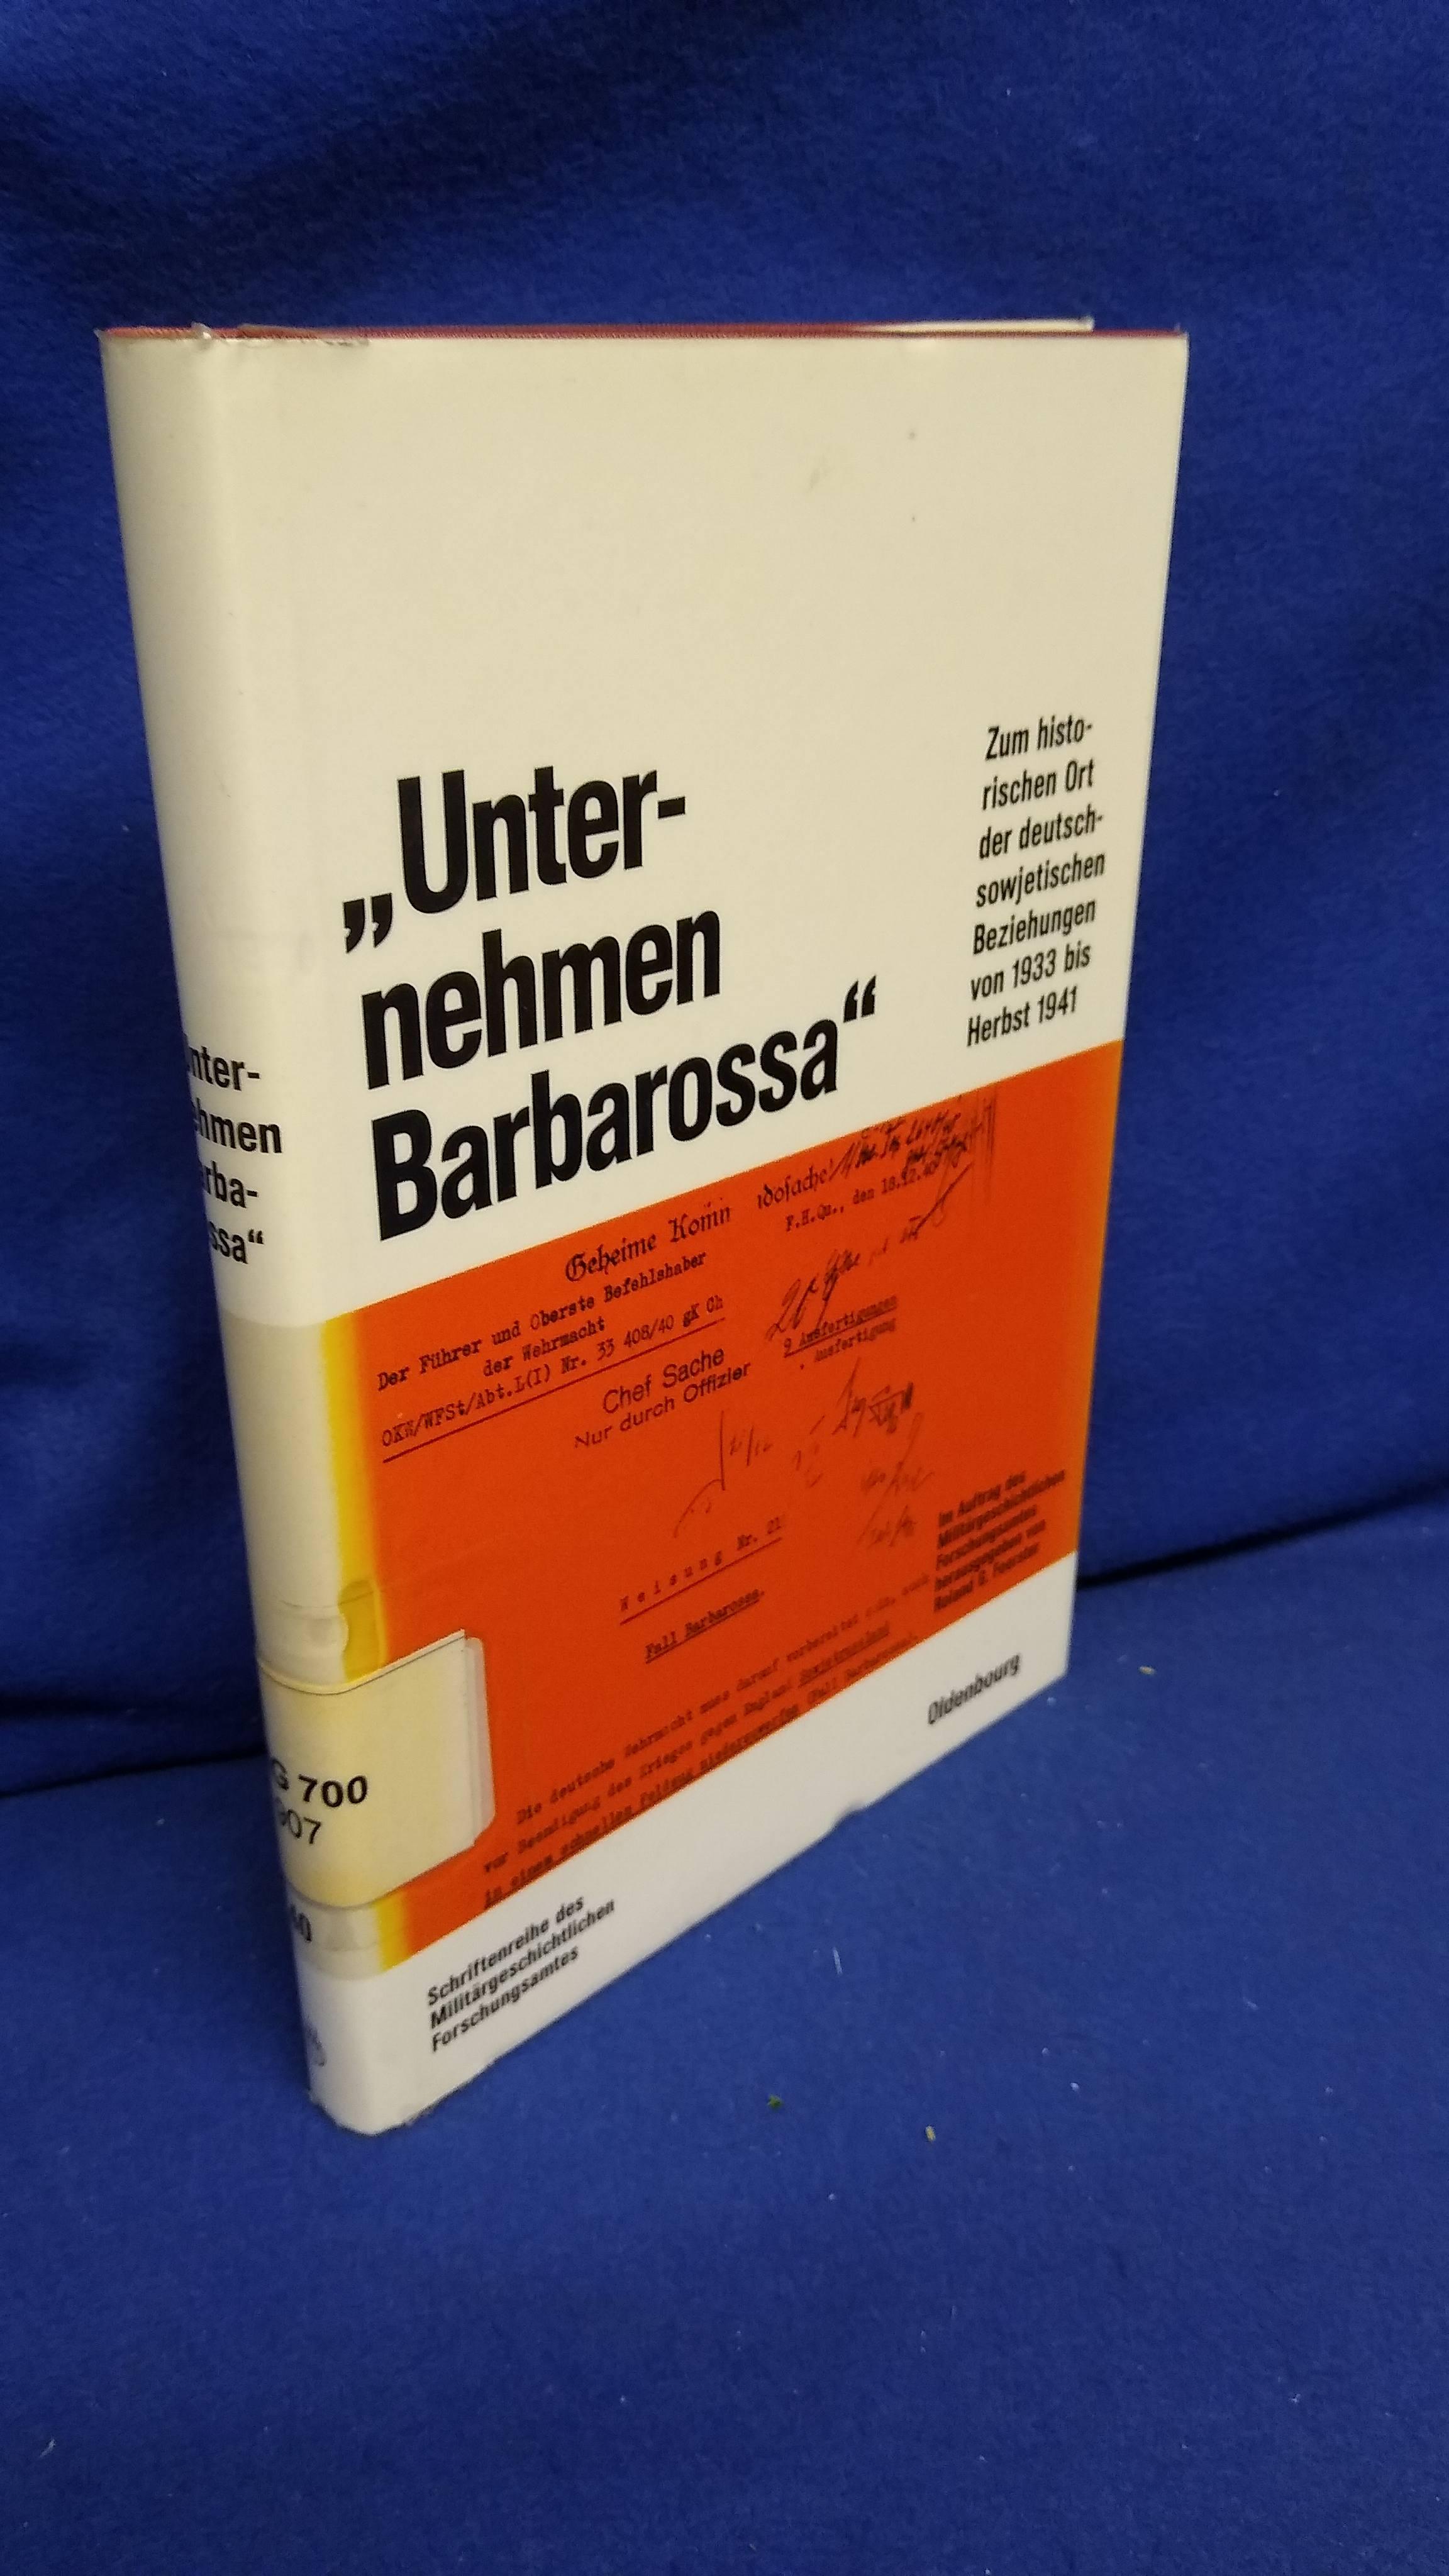 Beiträge zur Militärgeschichte, Band 40: Unternehmen Barbarossa. Zum historischen Ort der deutsch-sowjetischen Beziehungen von 1933 bis Herbst 1941